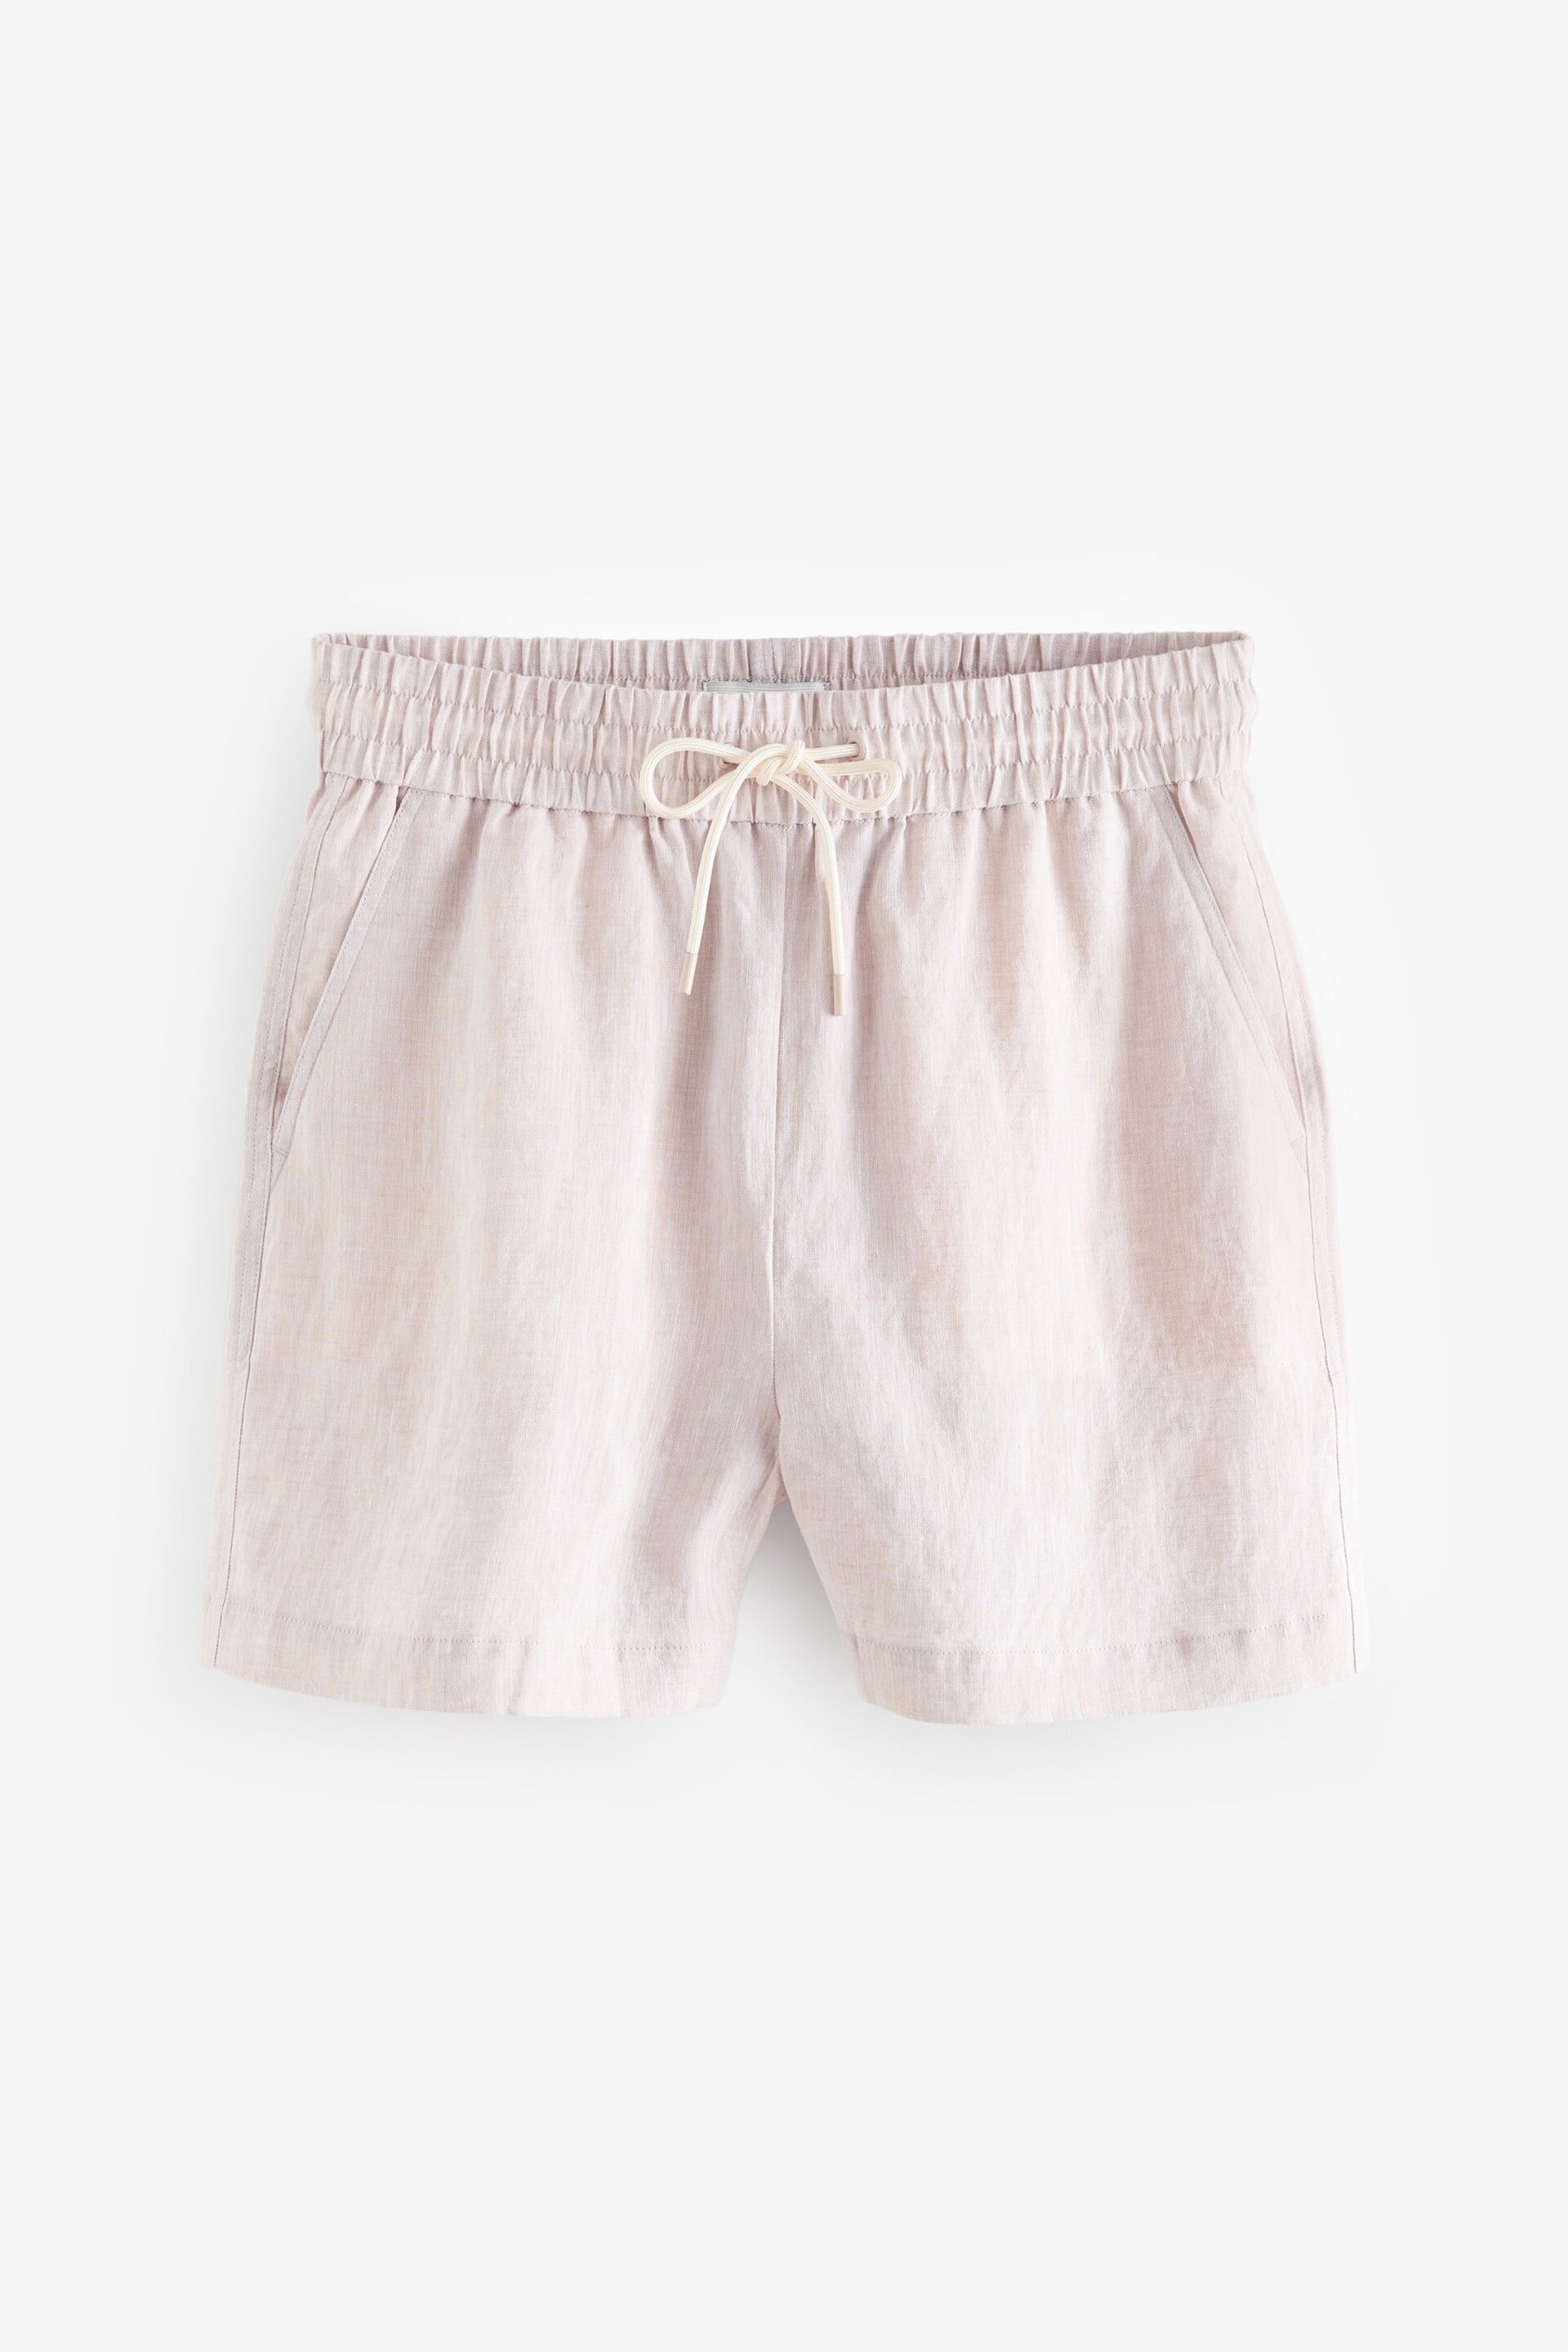 Natural 100% Linen Boy Shorts - Image 6 of 6